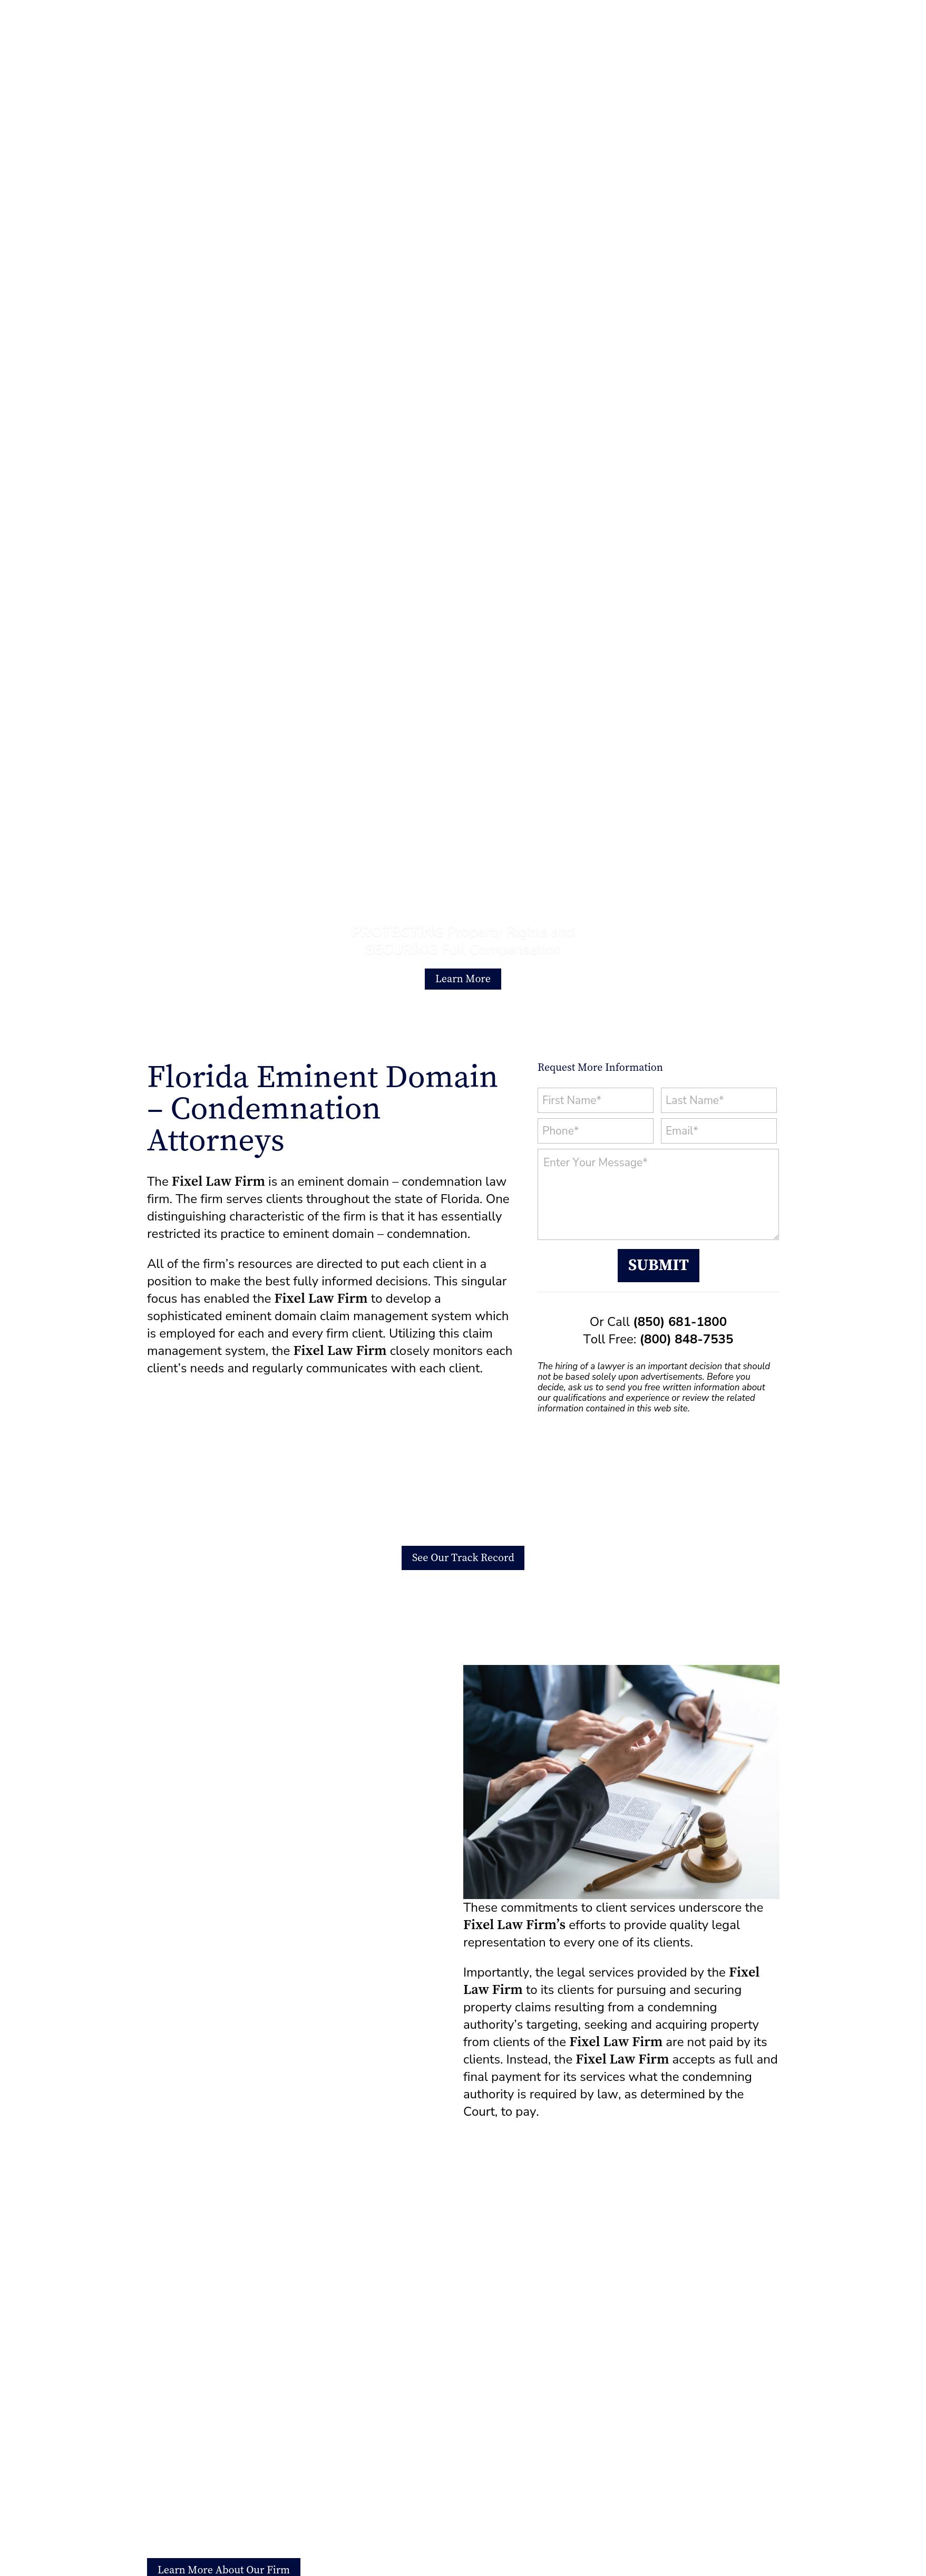 Fixel & Willis - Tallahassee FL Lawyers